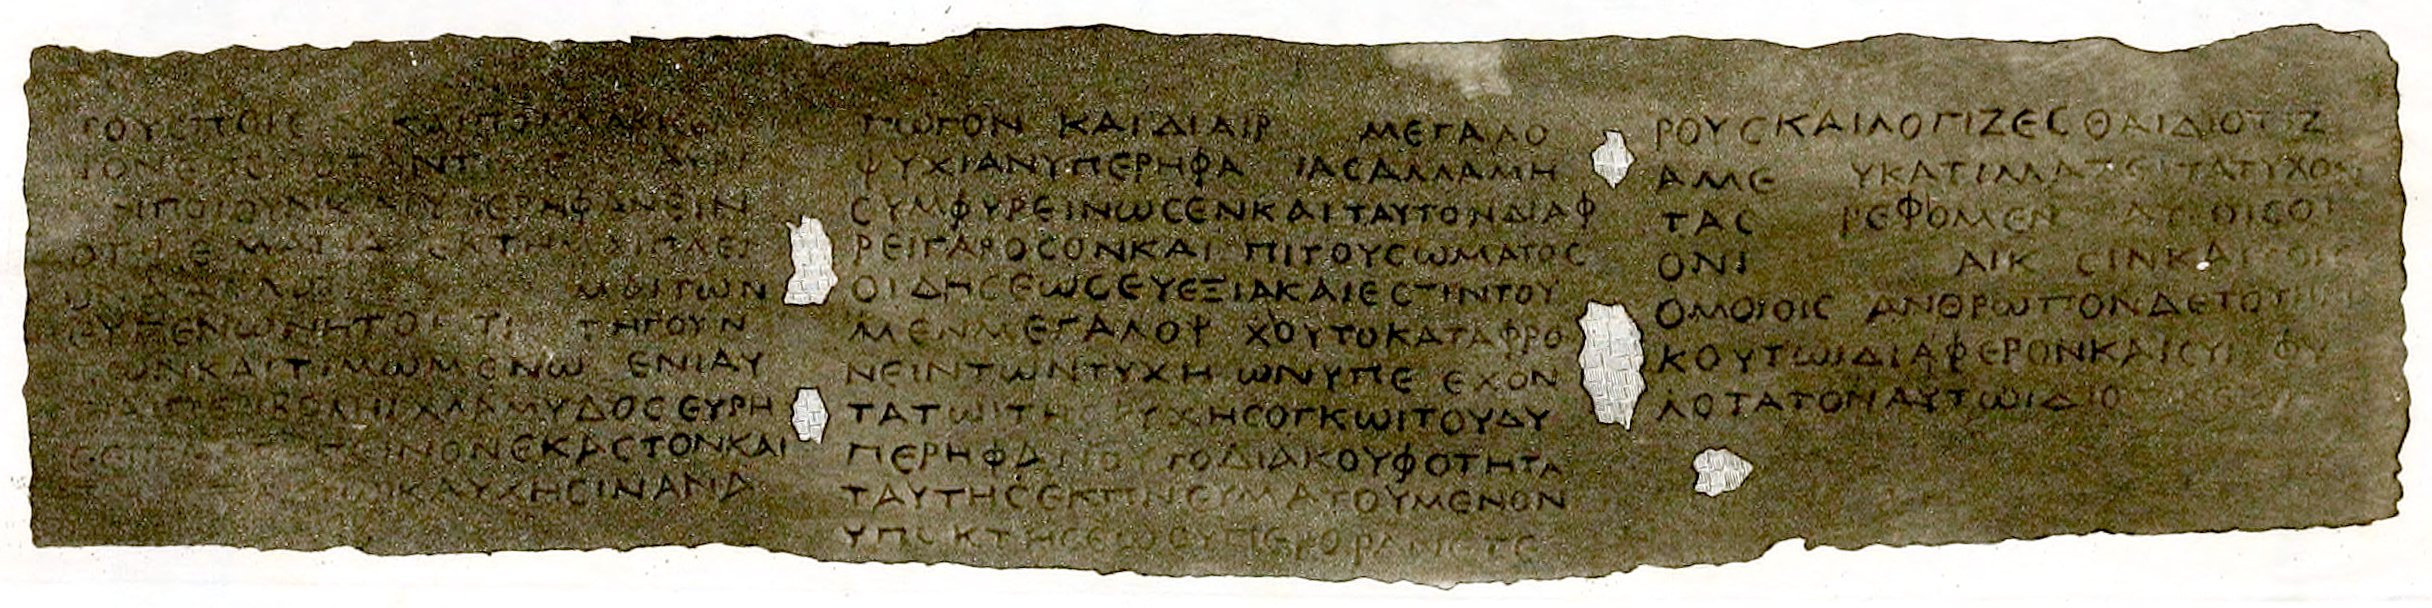 Herculaneum papirusa numurs 27 teksts tika atritināts un izlasīts